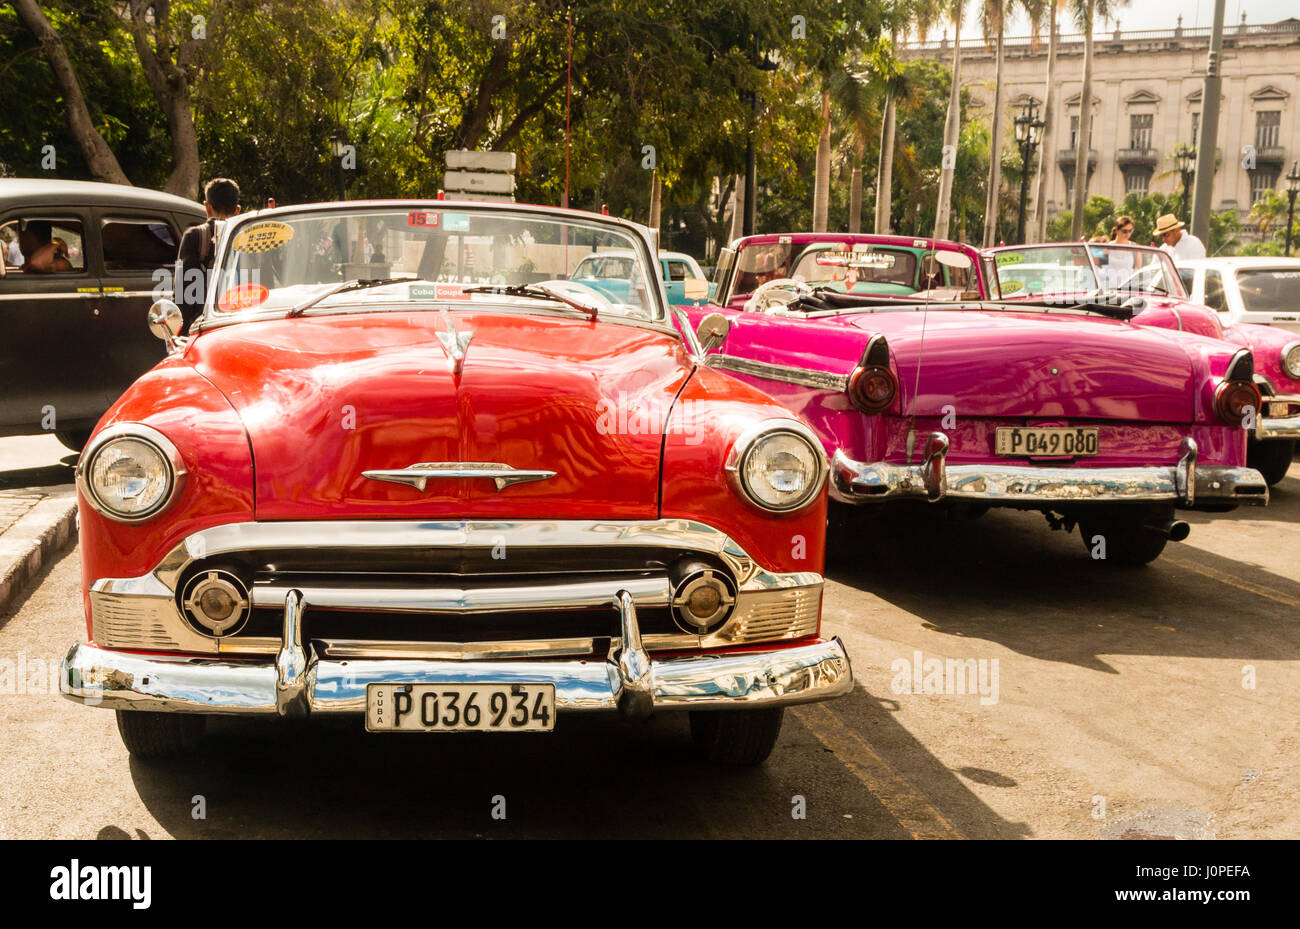 Voiture américaine classique, La Havane, Cuba Banque D'Images